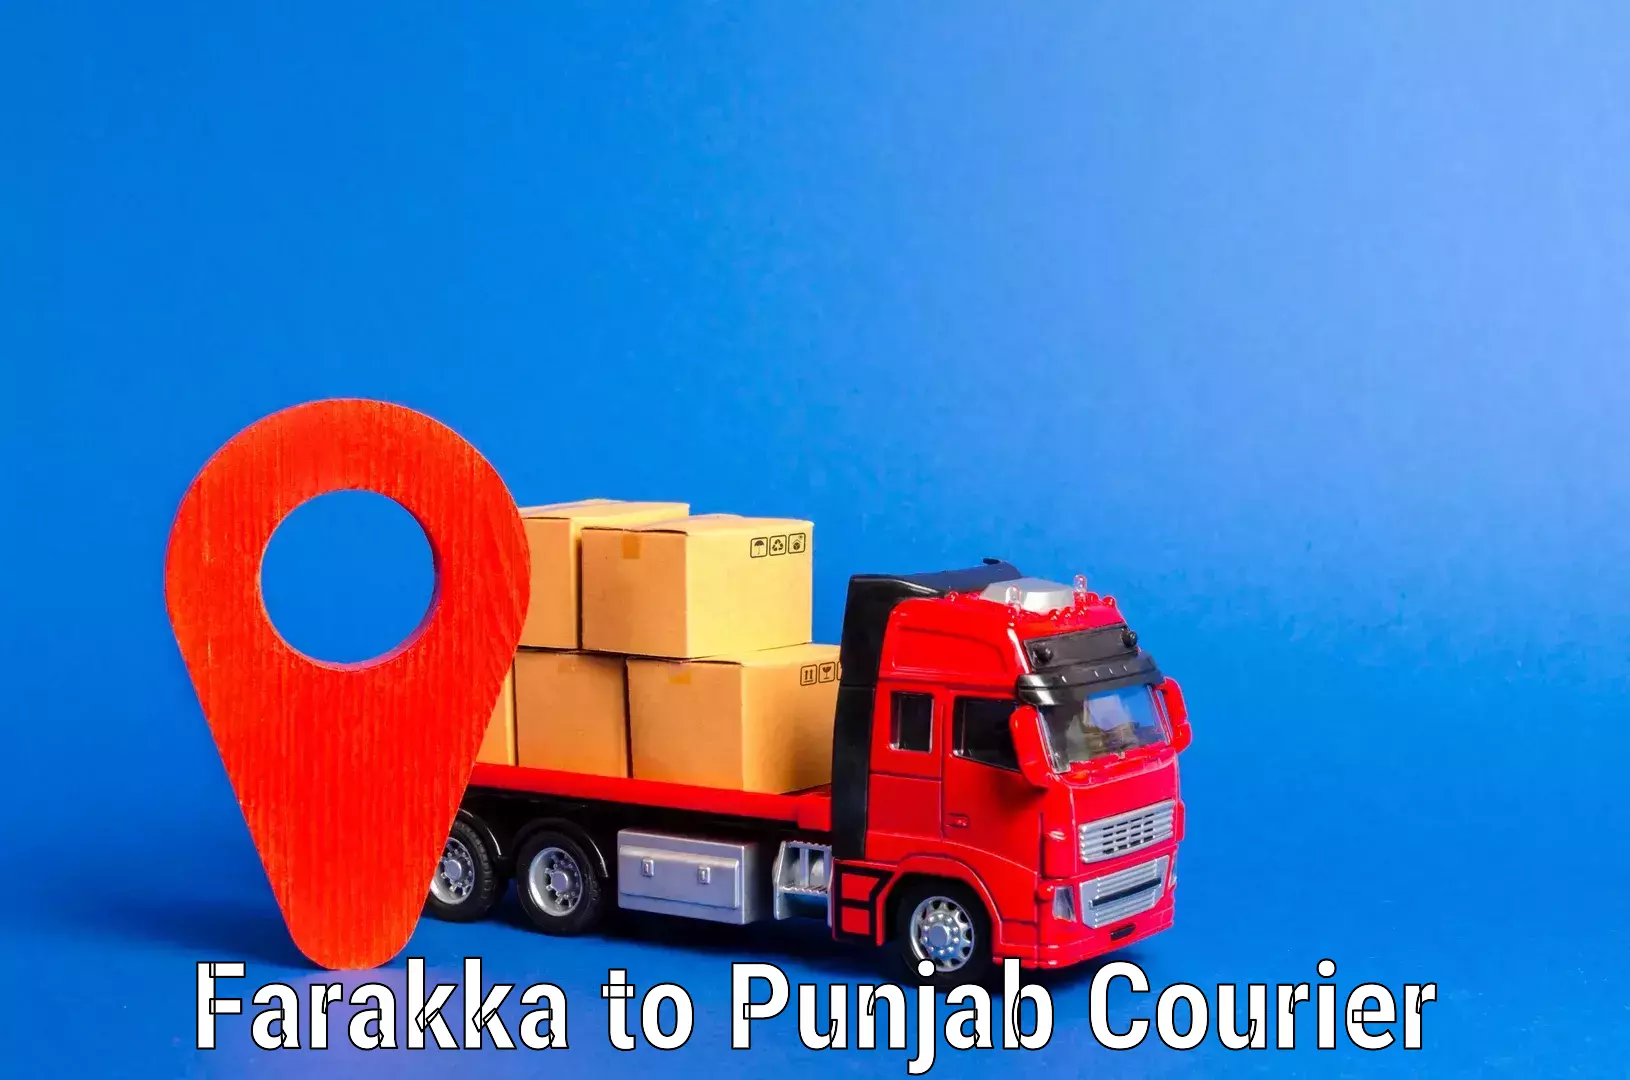 Smooth moving experience in Farakka to Punjab